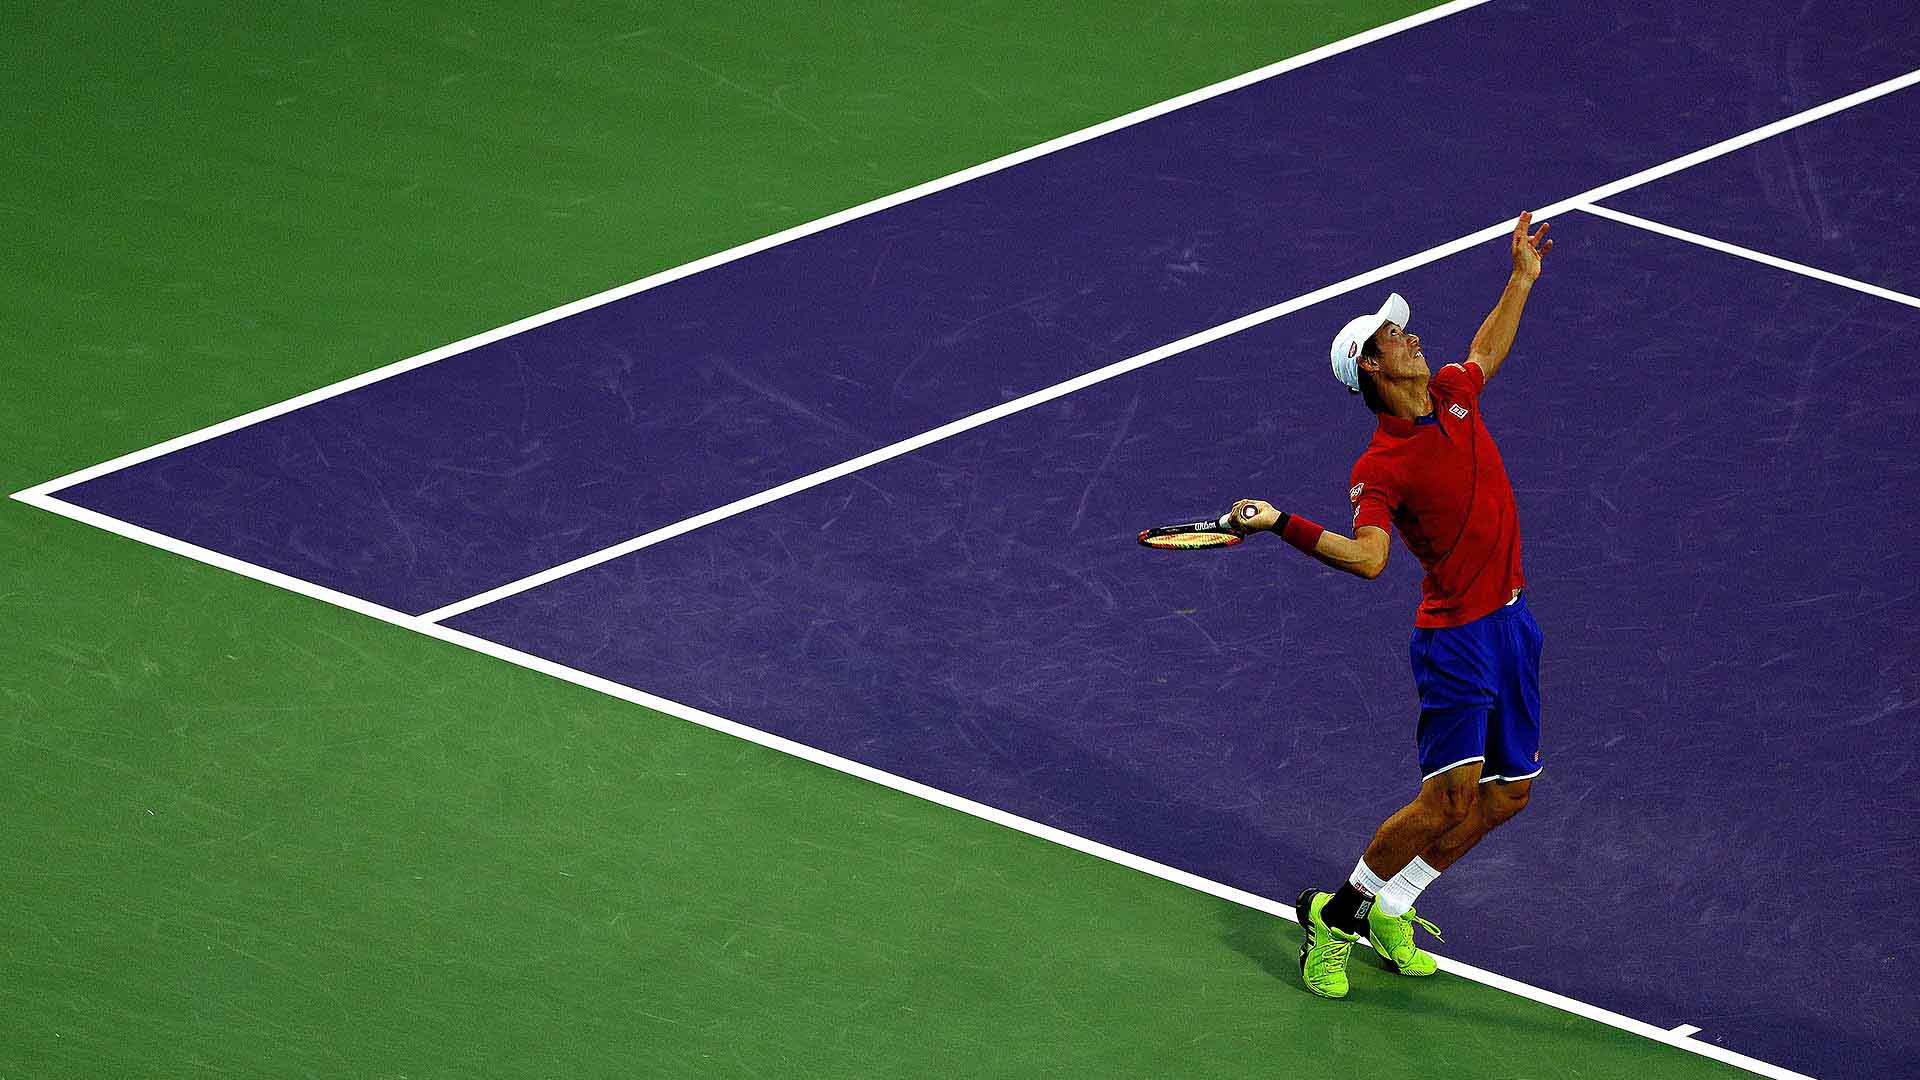 Nishikori ha battuto Djokovic l'ultima volta nel 2014: esatto, in quella semifinale Slam di New York